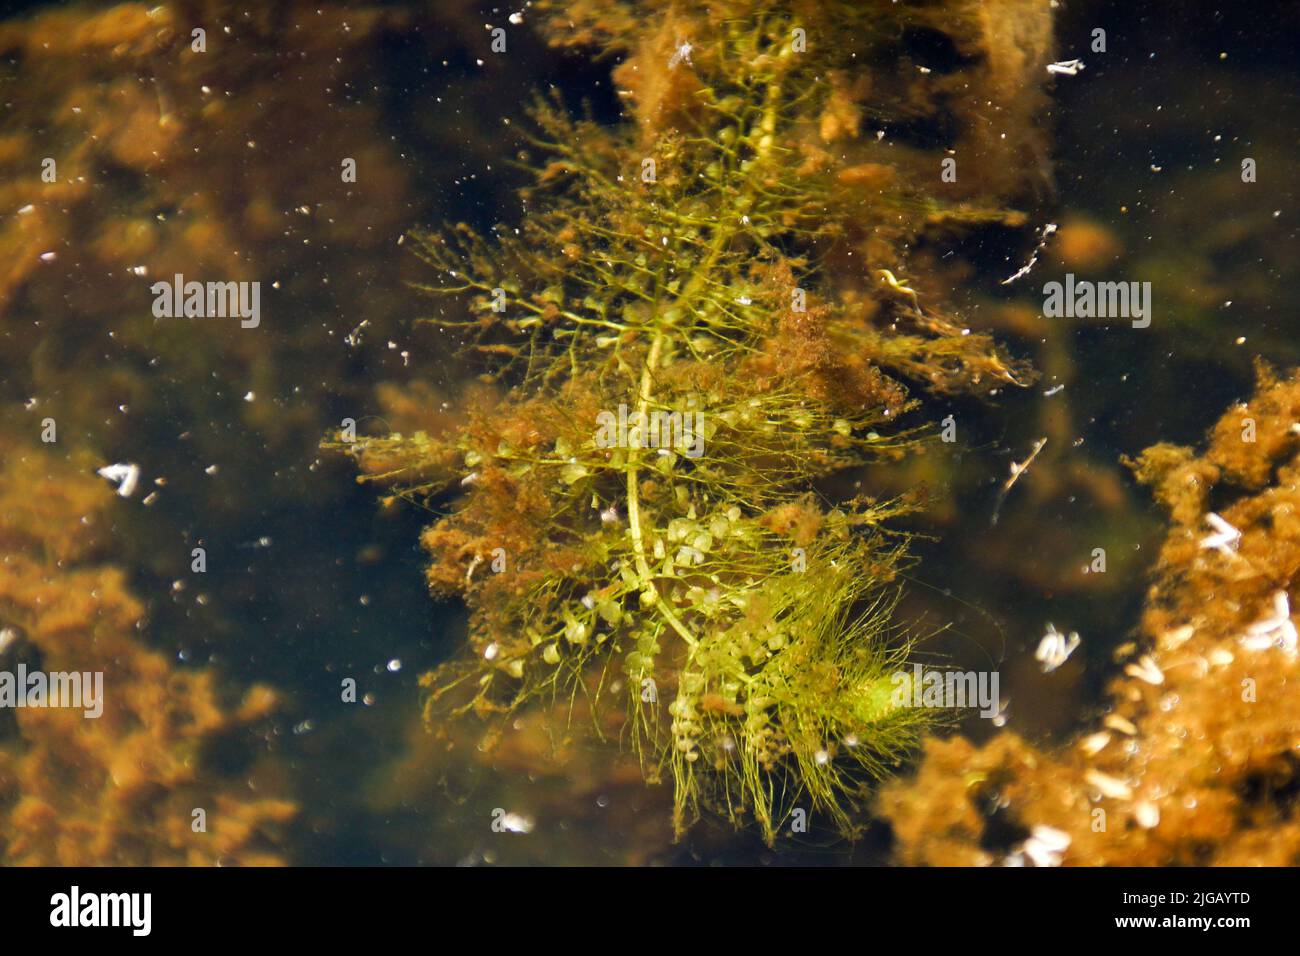 Floating traps of aquatic bladderwort (Utricularia australis), Tasmania, Australia Stock Photo